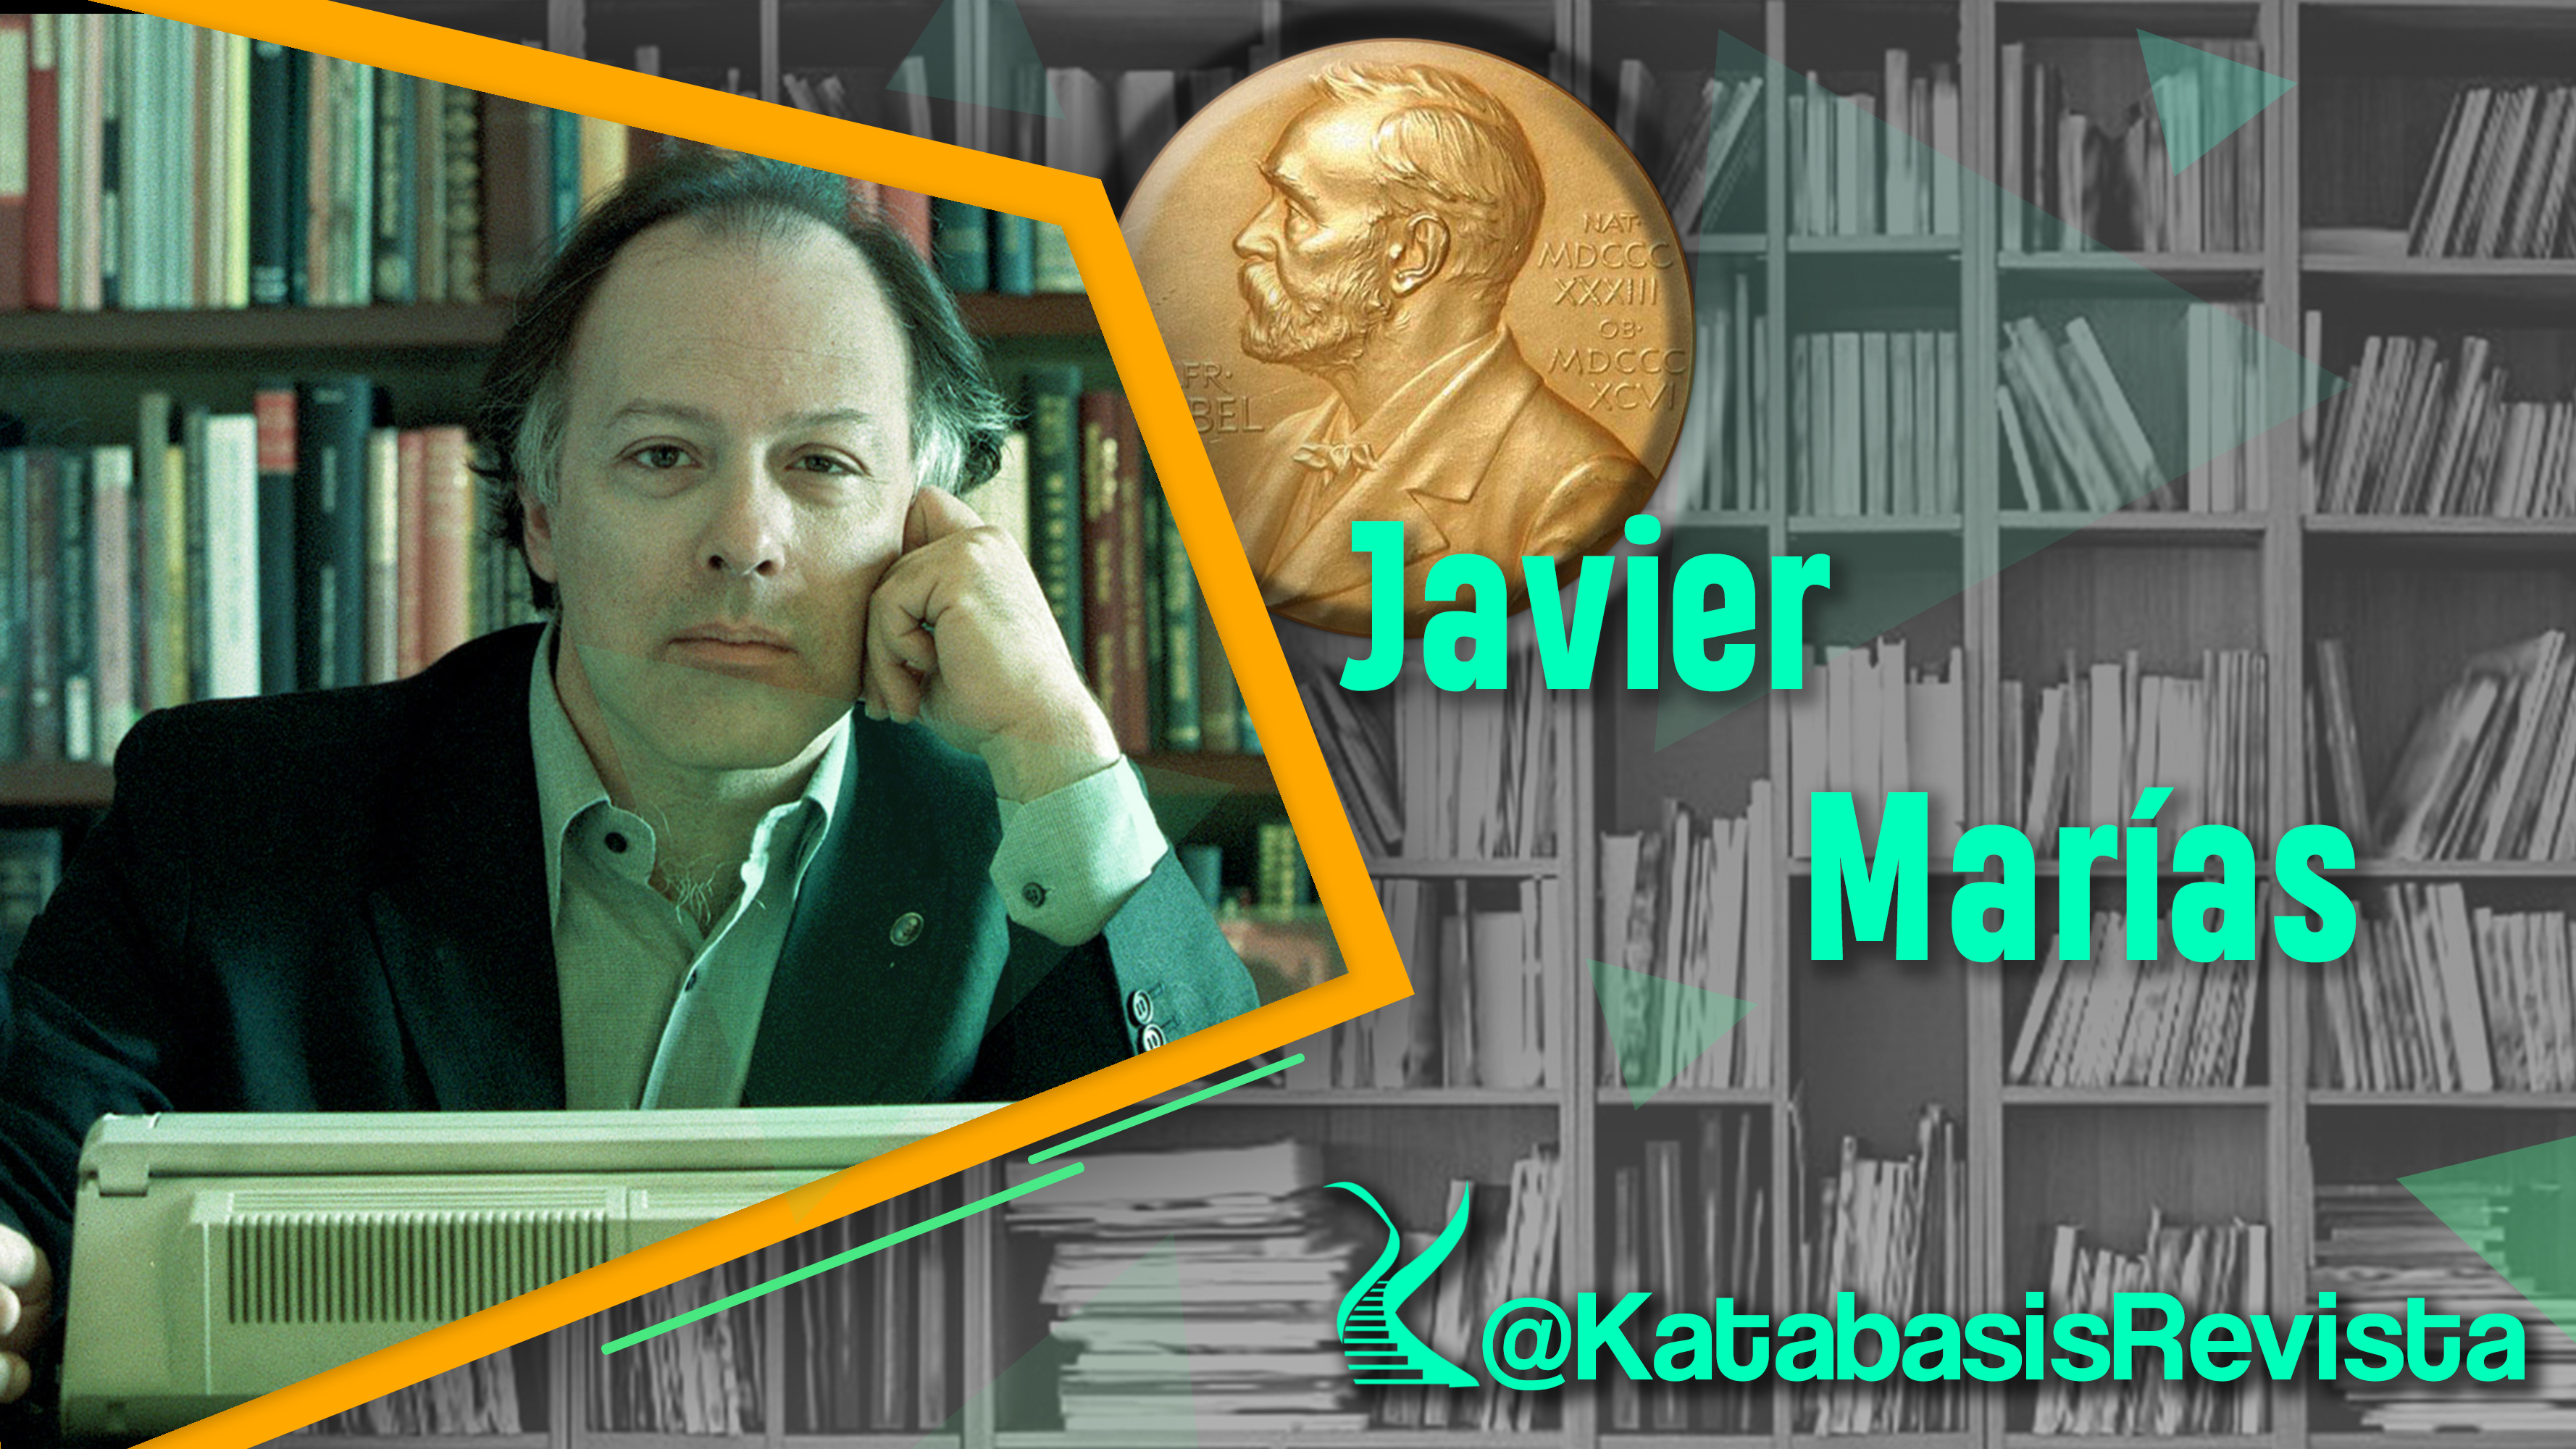 De Camino al Nobel |Javier Marías